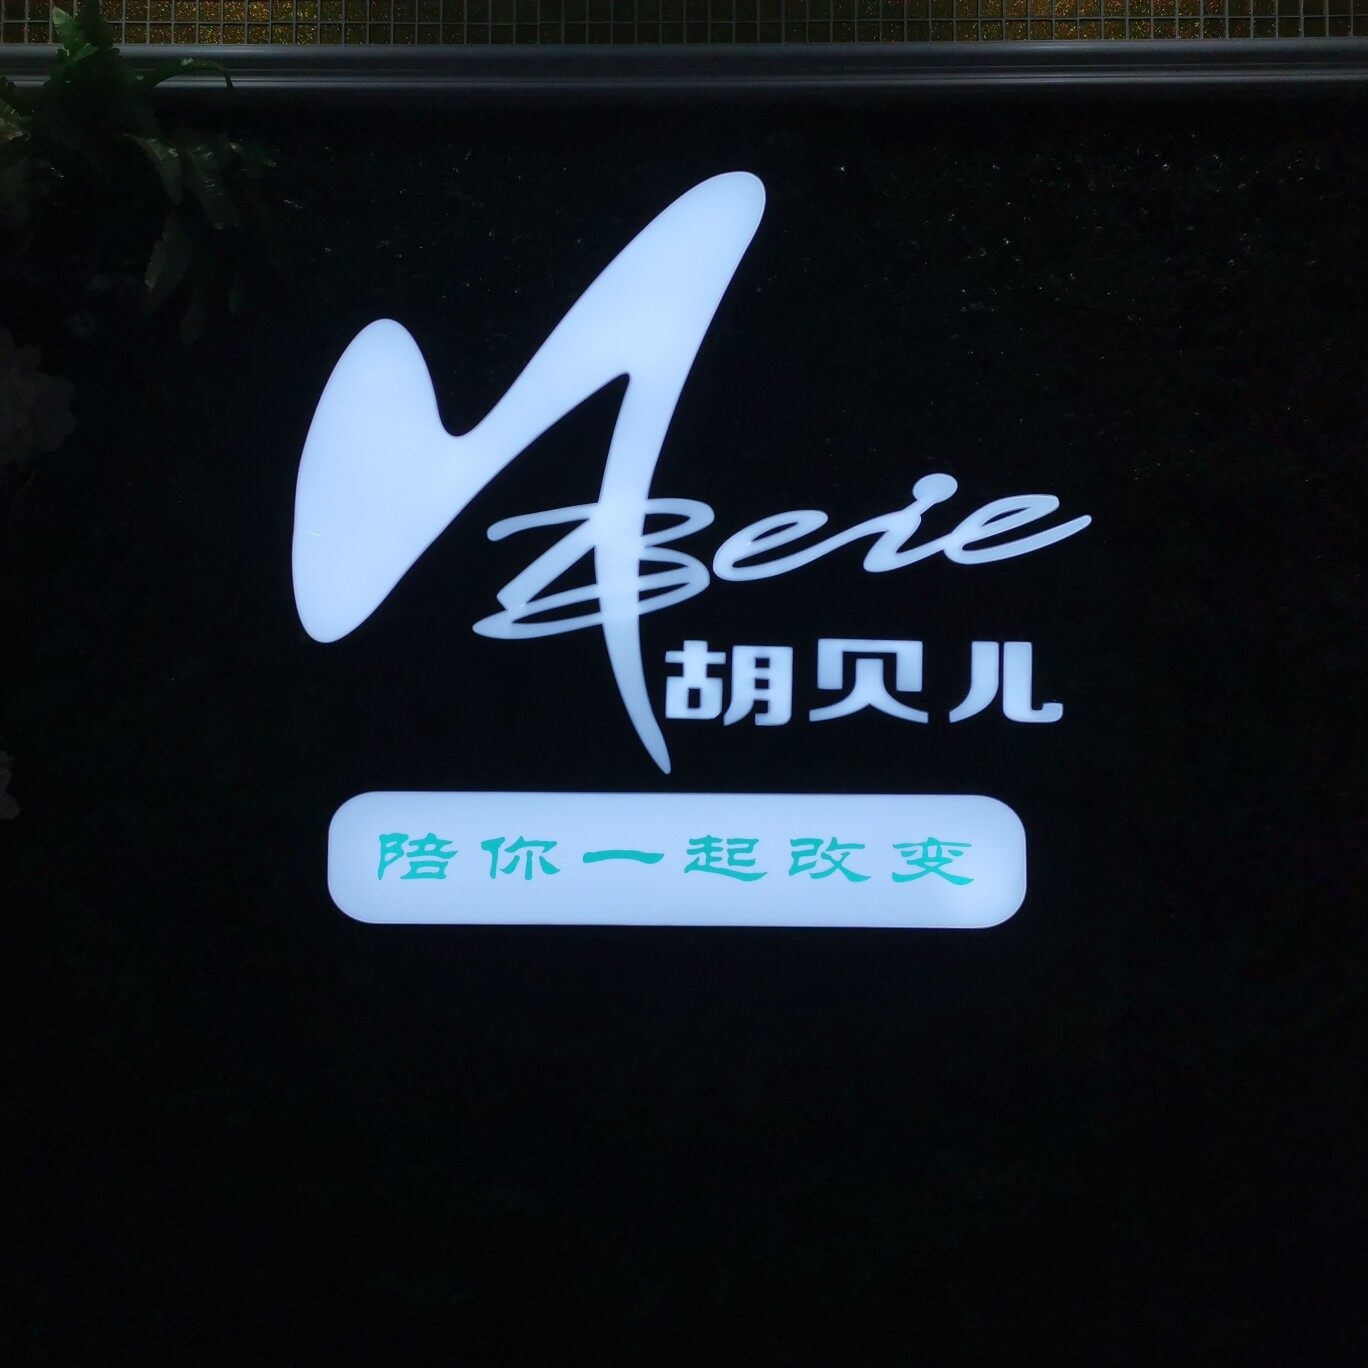 深圳市胡贝儿形体礼仪传媒有限公司logo